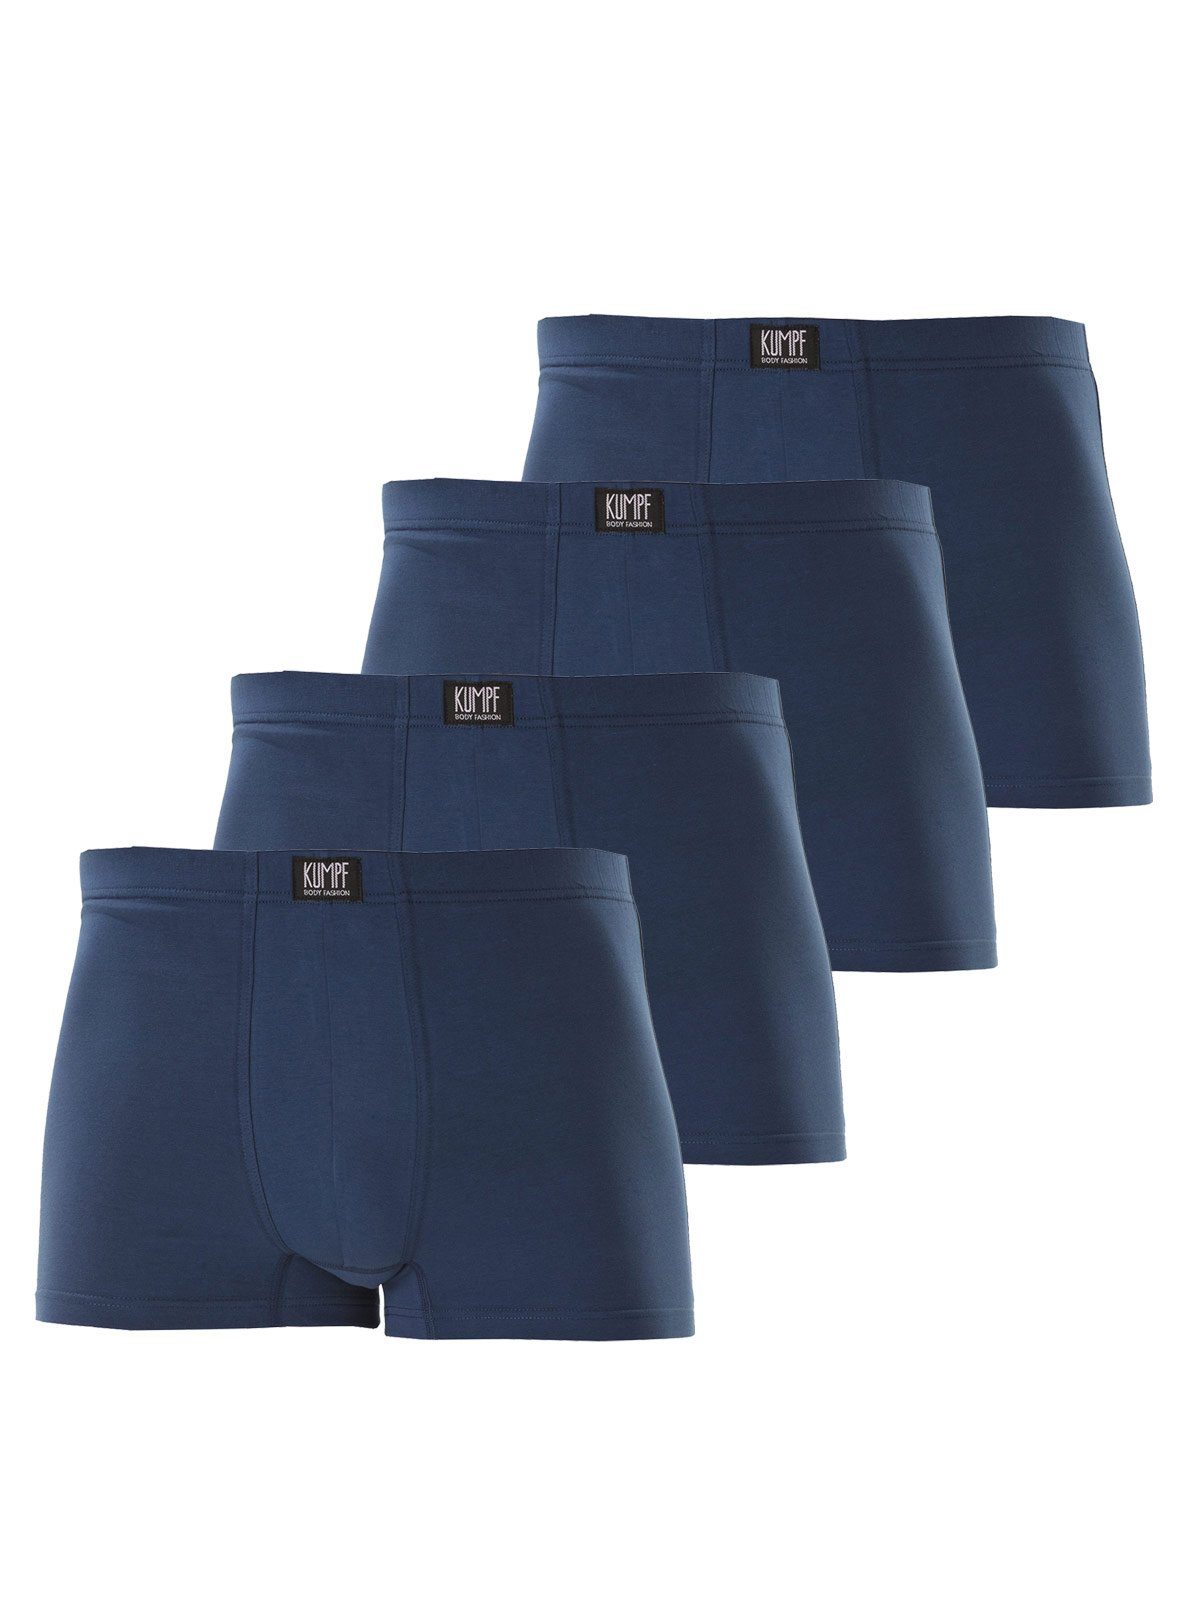 KUMPF Retro Pants 4er Sparpack Herren Pants Bio Cotton (Spar-Set, 4-St) hohe Markenqualität darkblue | Unterhosen